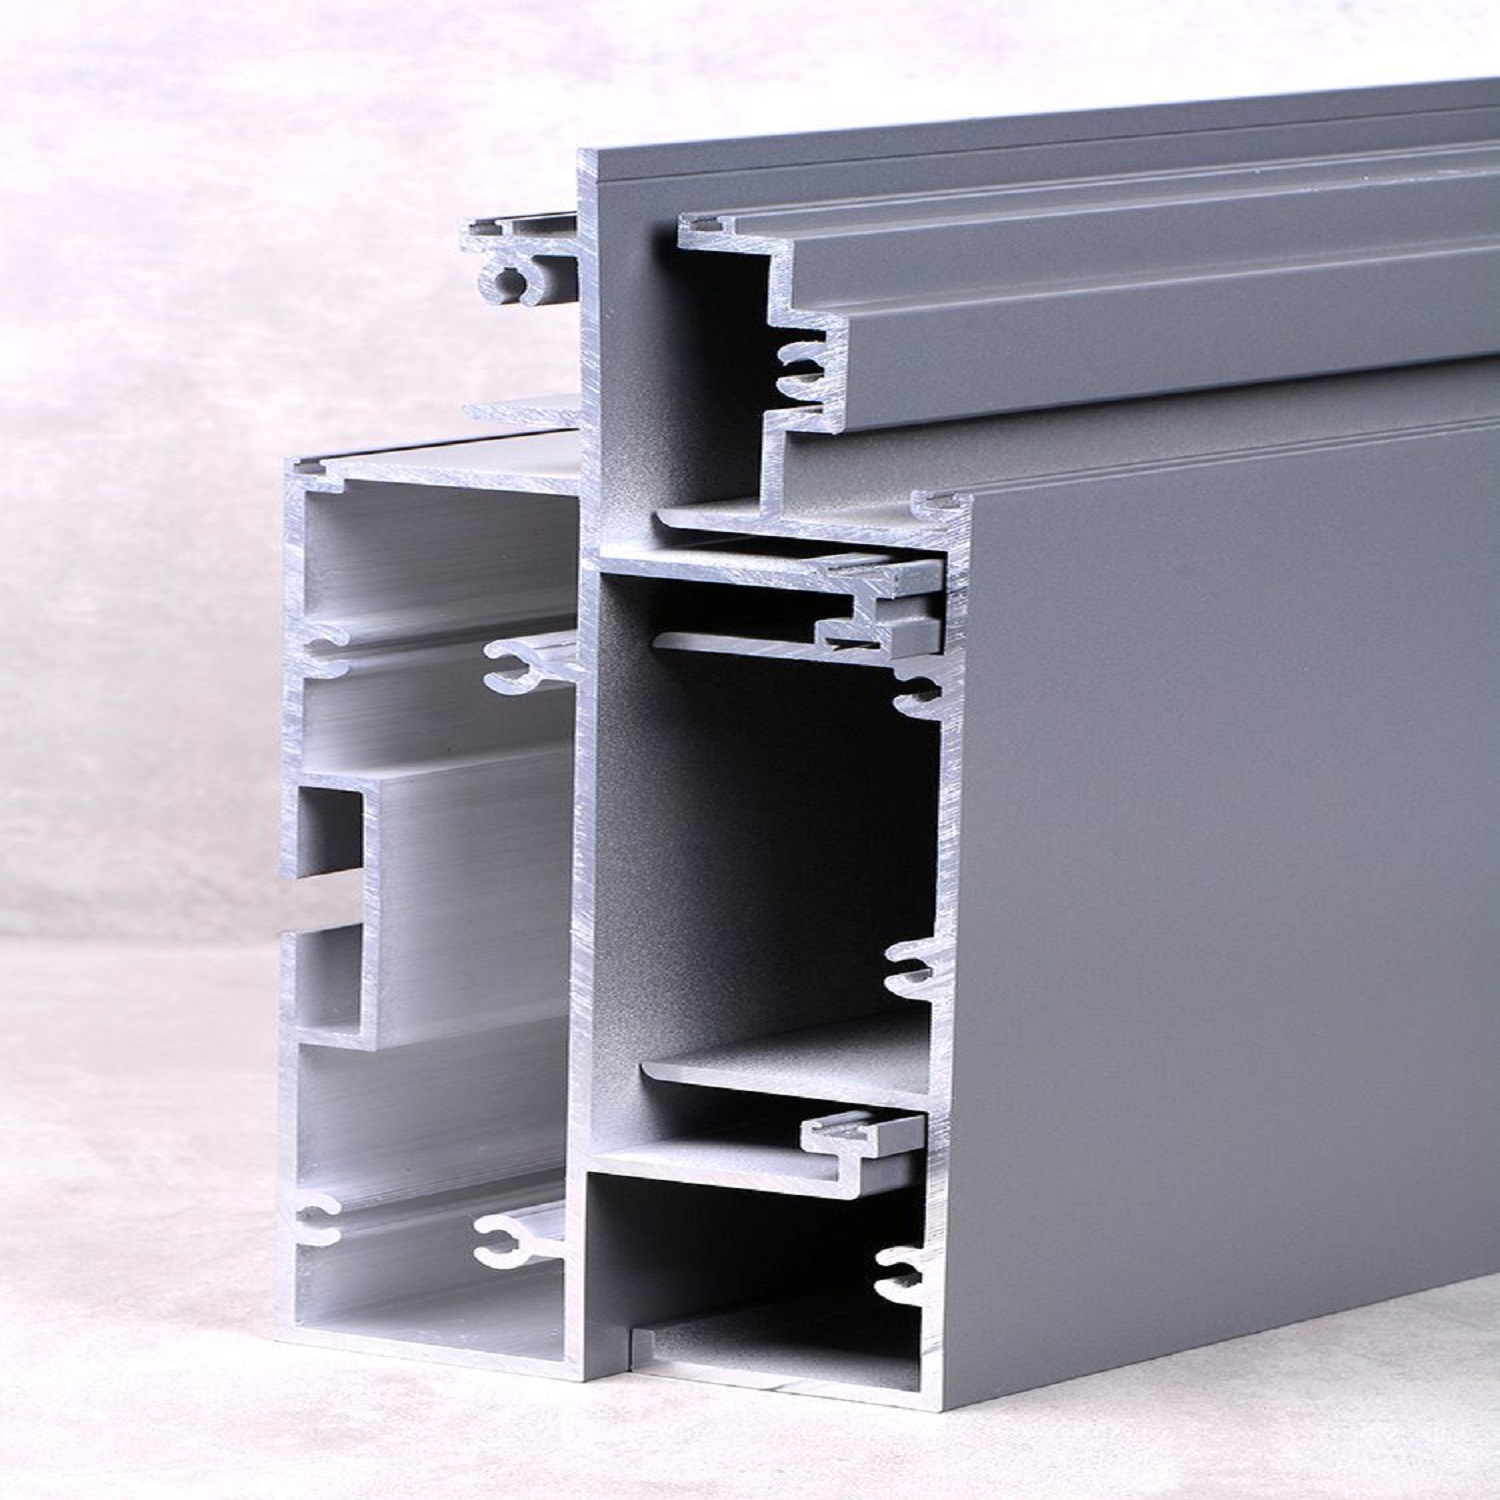 Aluminiumprofil für modulare Vorhangfassade
